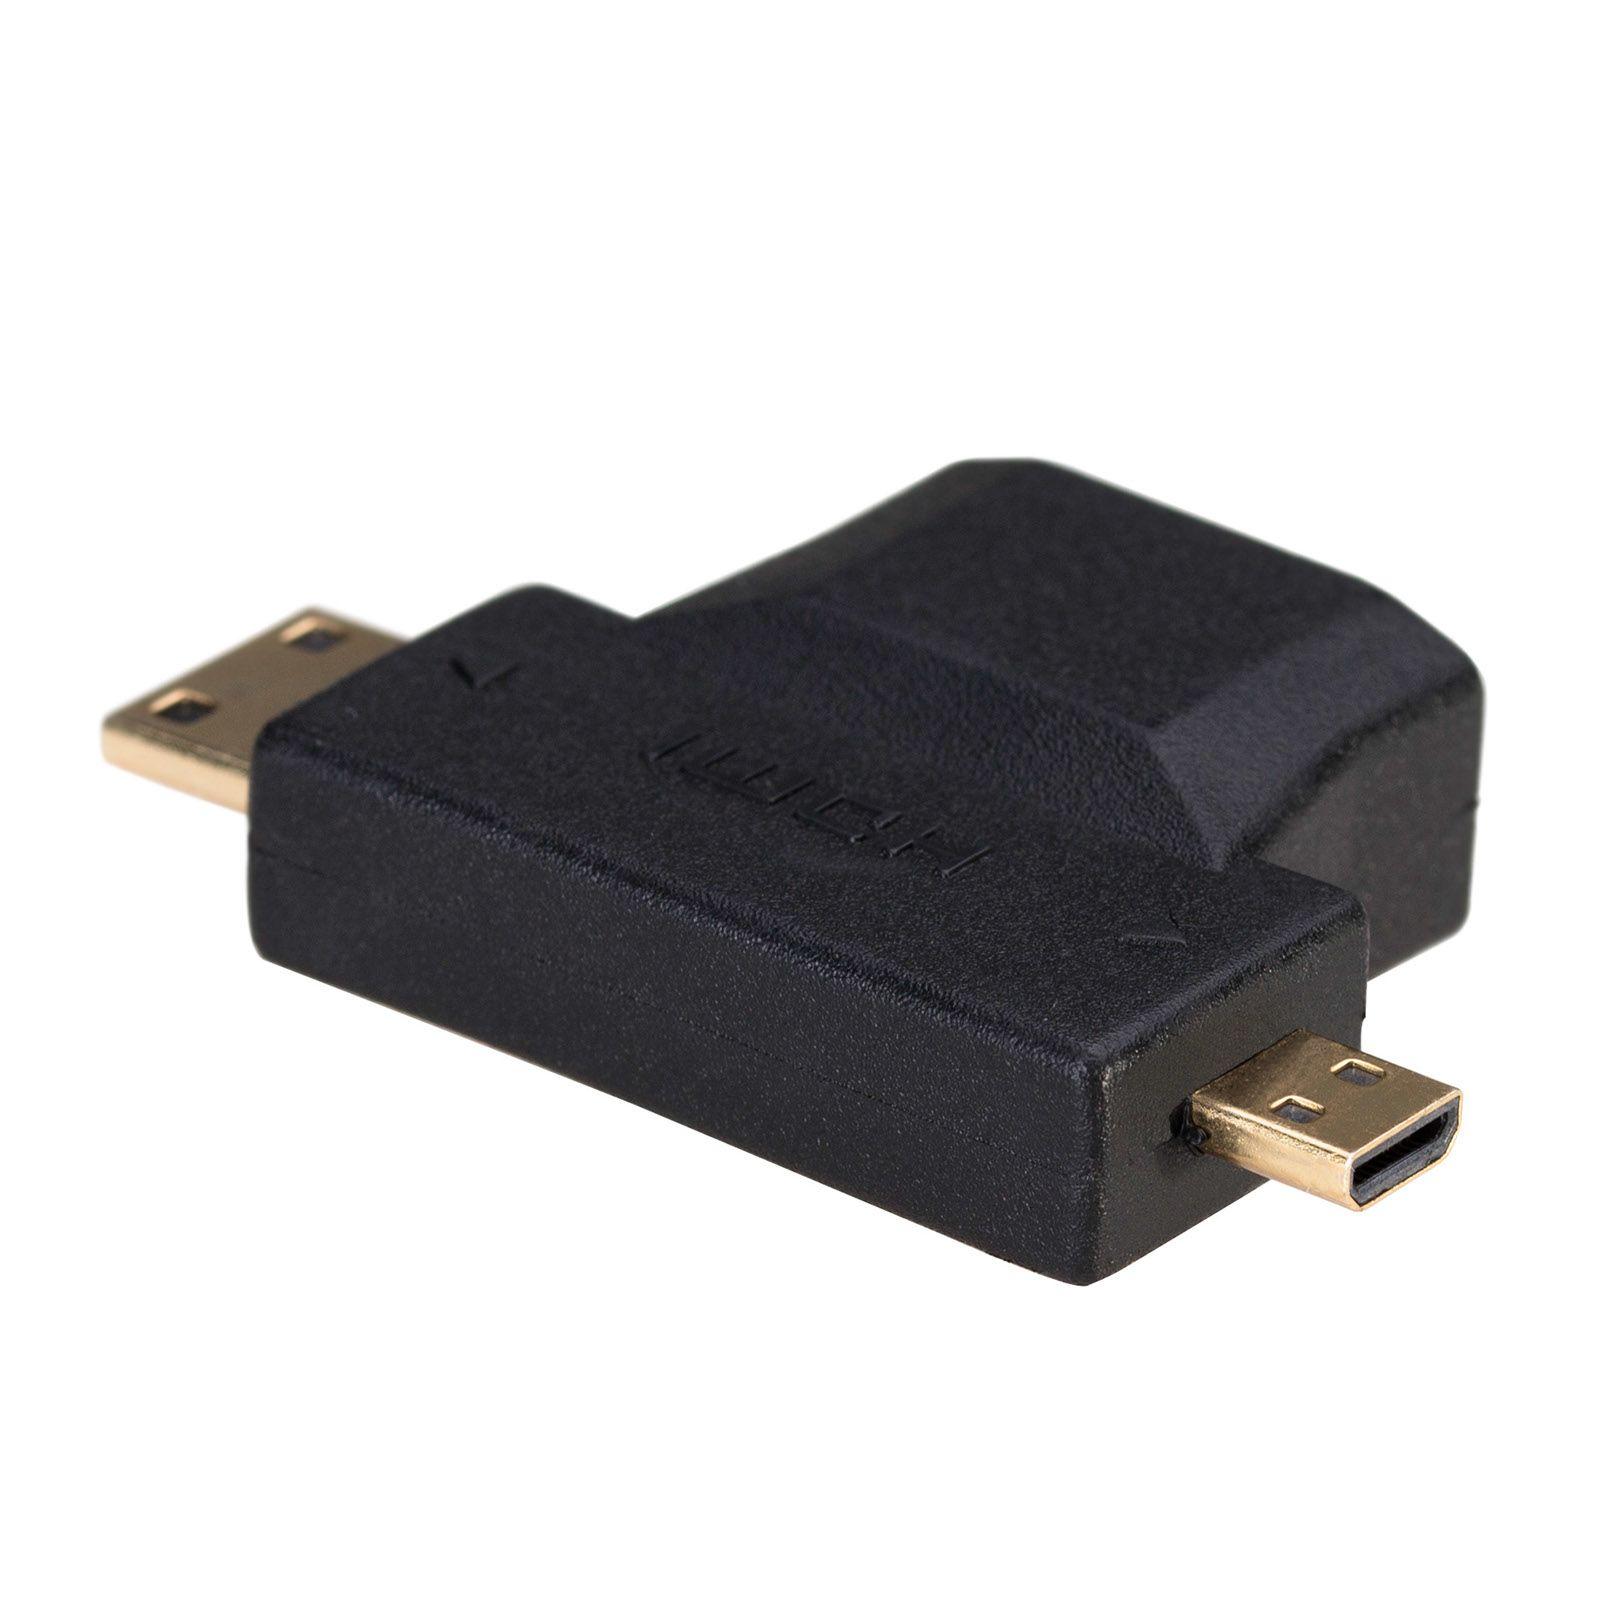 Akyga AK-AD-23 cable gender changer HDMI miniHDMI / microHDMI Black